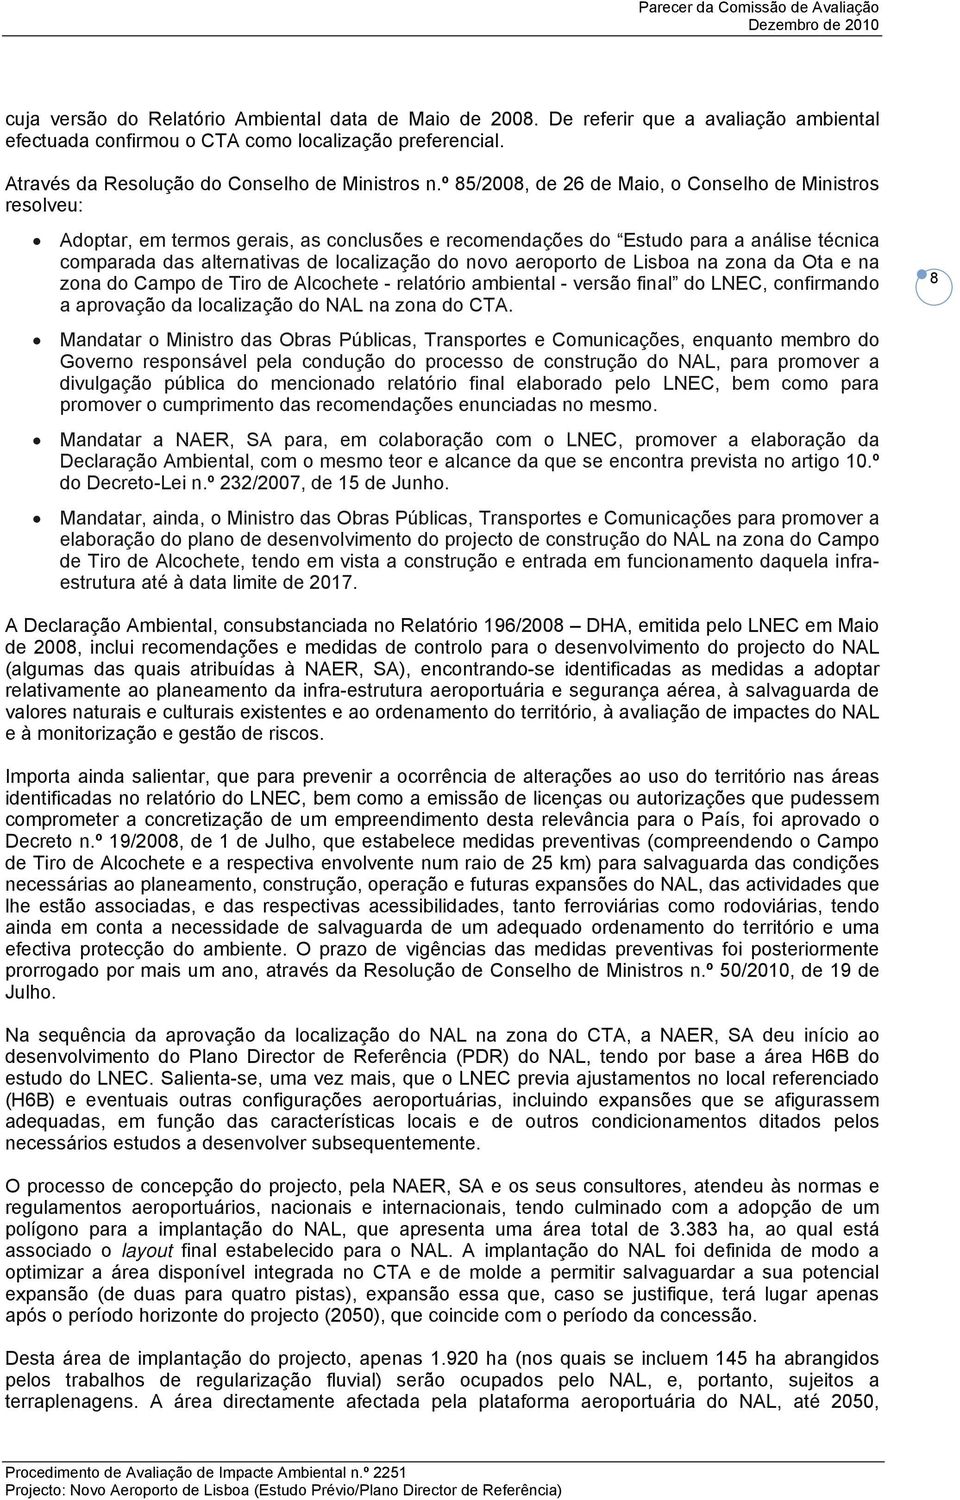 aeroporto de Lisboa na zona da Ota e na zona do Campo de Tiro de Alcochete - relatório ambiental - versão final do LNEC, confirmando a aprovação da localização do NAL na zona do CTA.